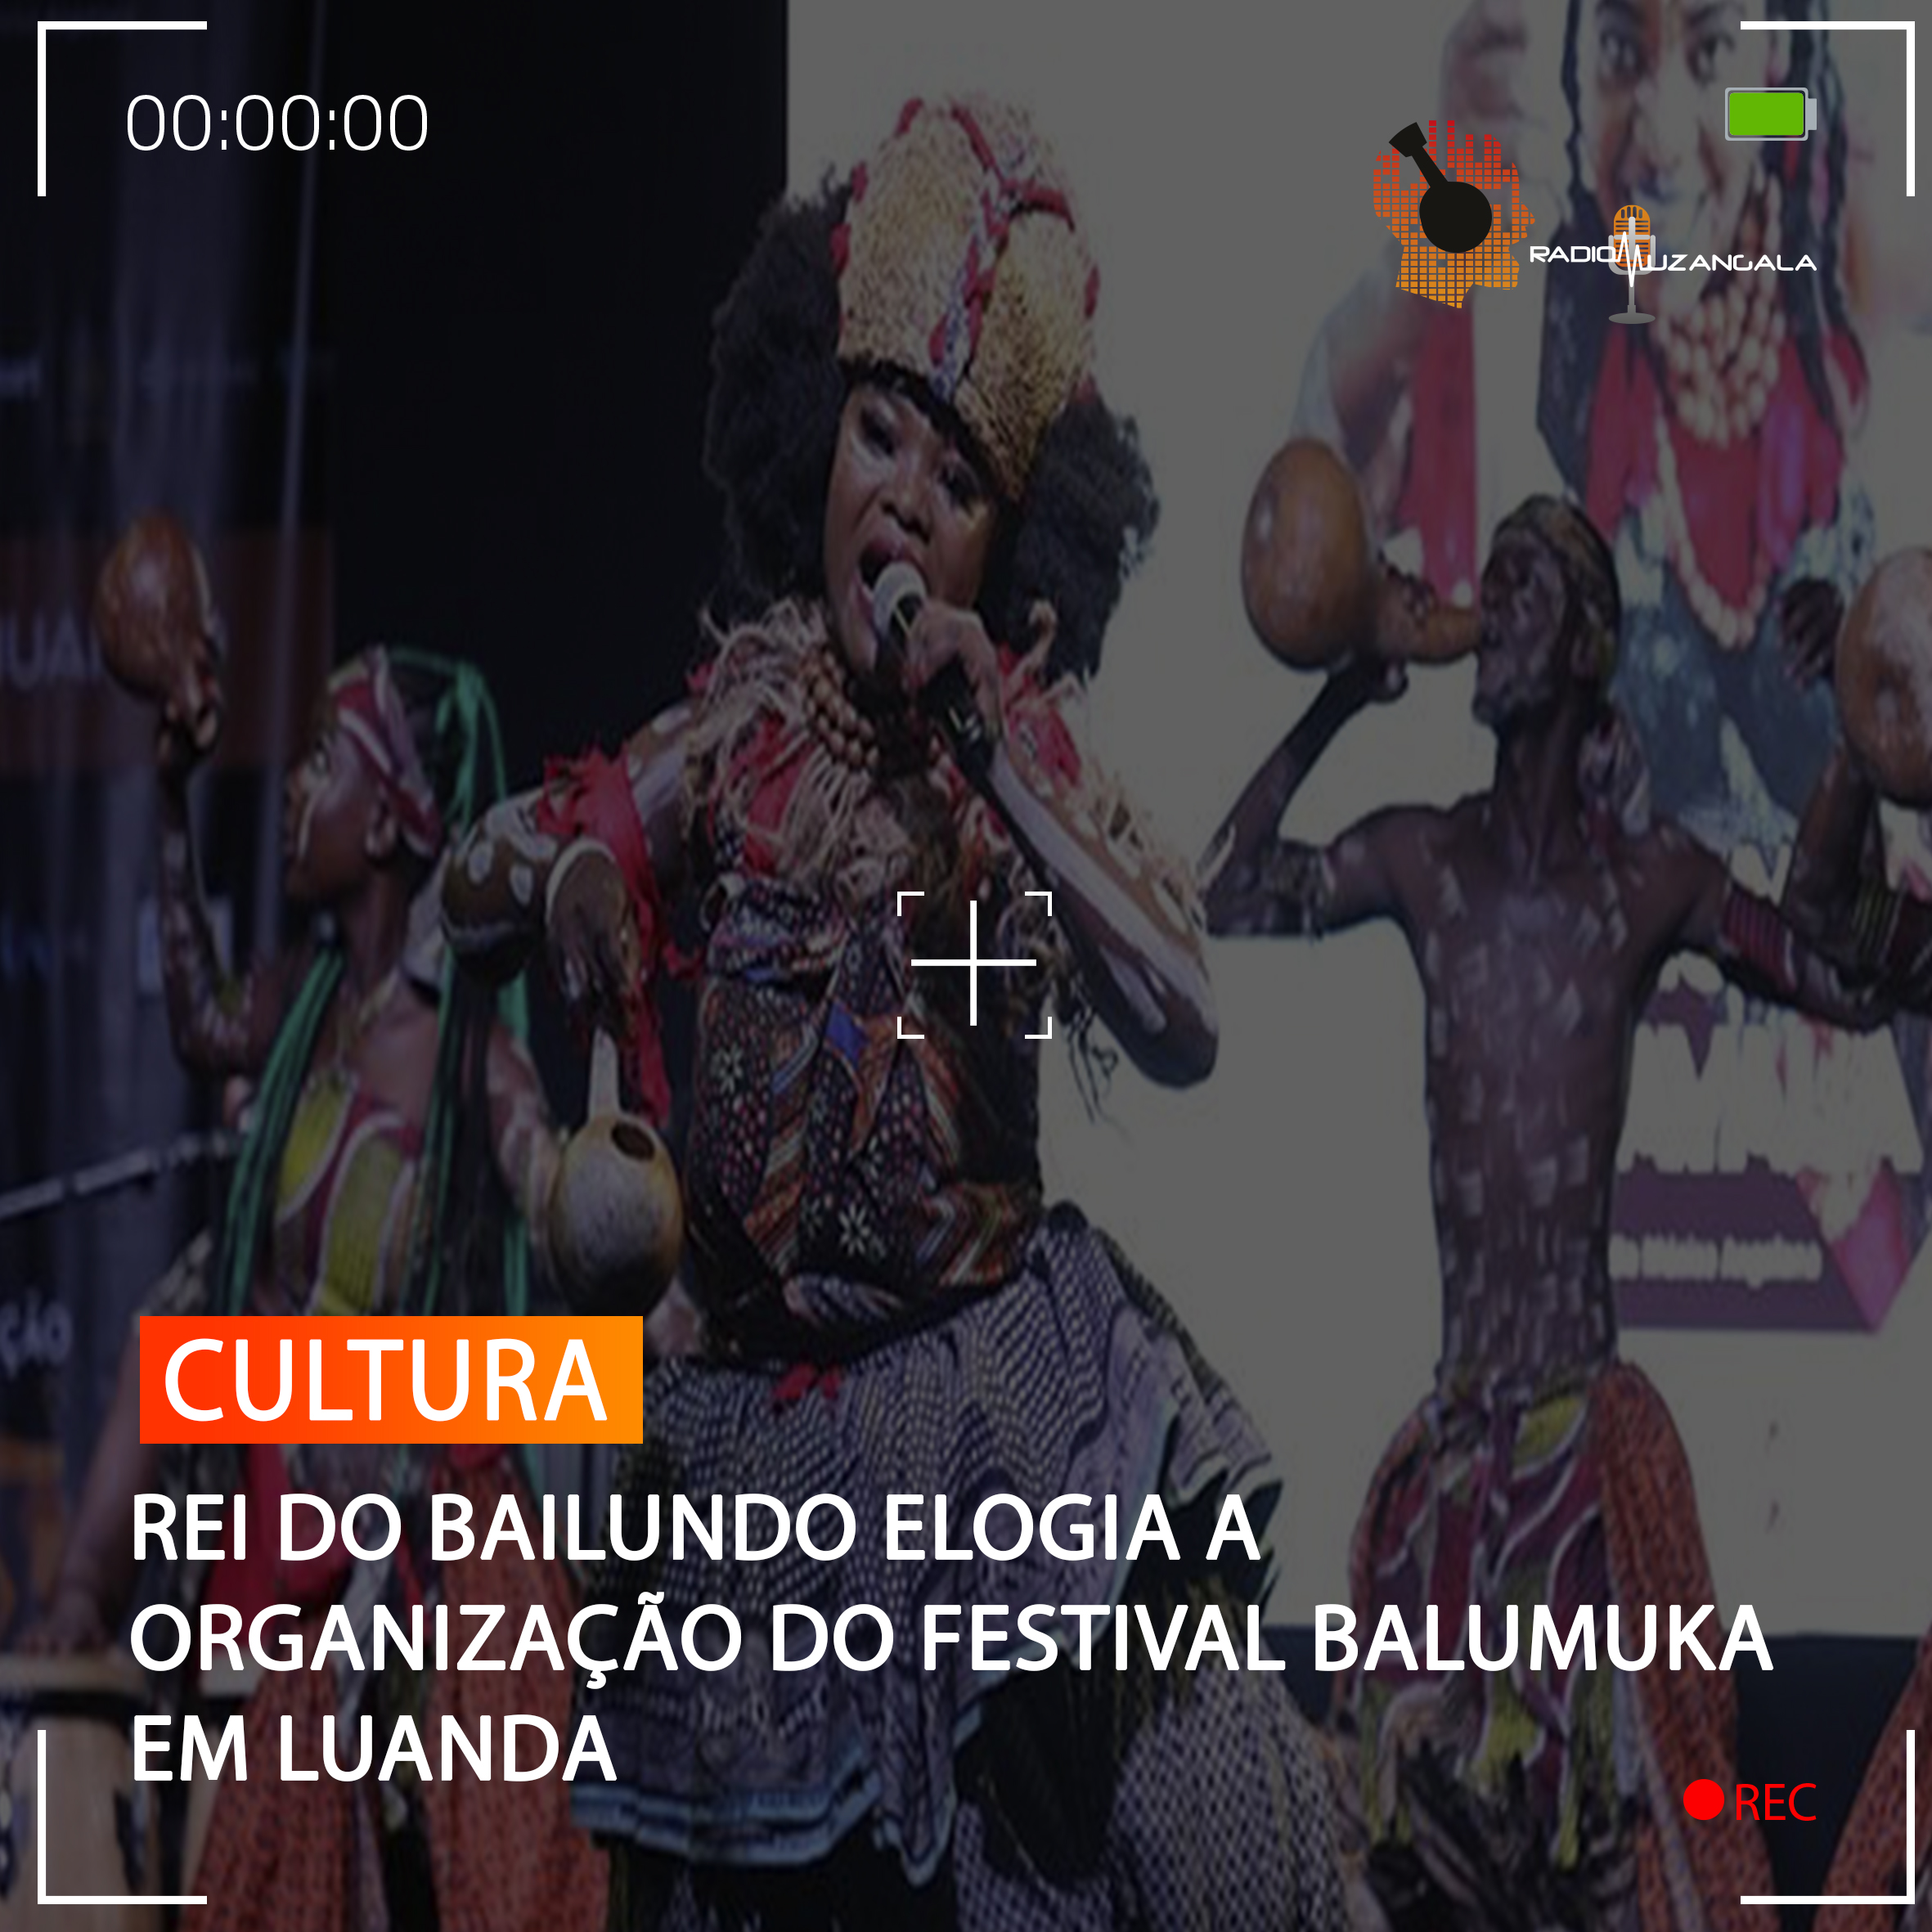  REI DO BAILUNDO ELOGIA ORGANIZAÇÃO DO FESTIVAL BALUMUKA EM LUANDA